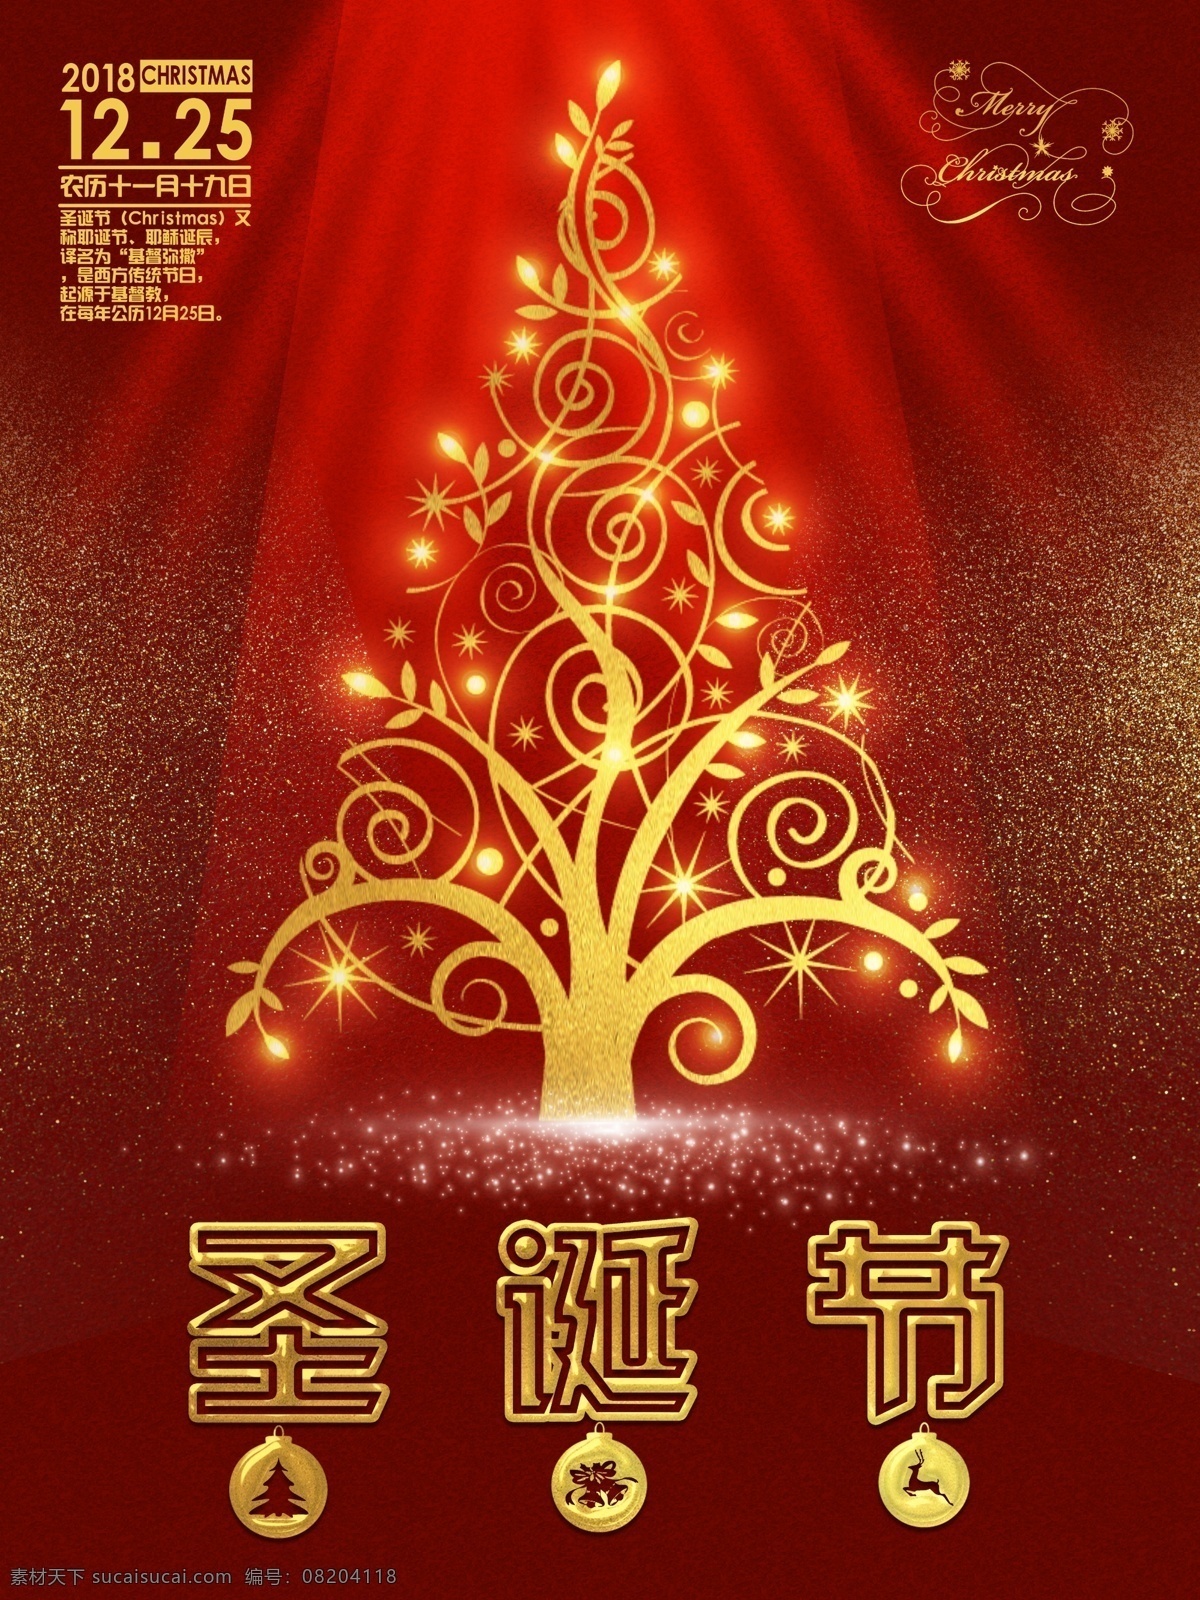 金色 圣诞树 圣诞节 促销 海报 满减 打折 节日海报 圣诞快乐 圣诞钜惠